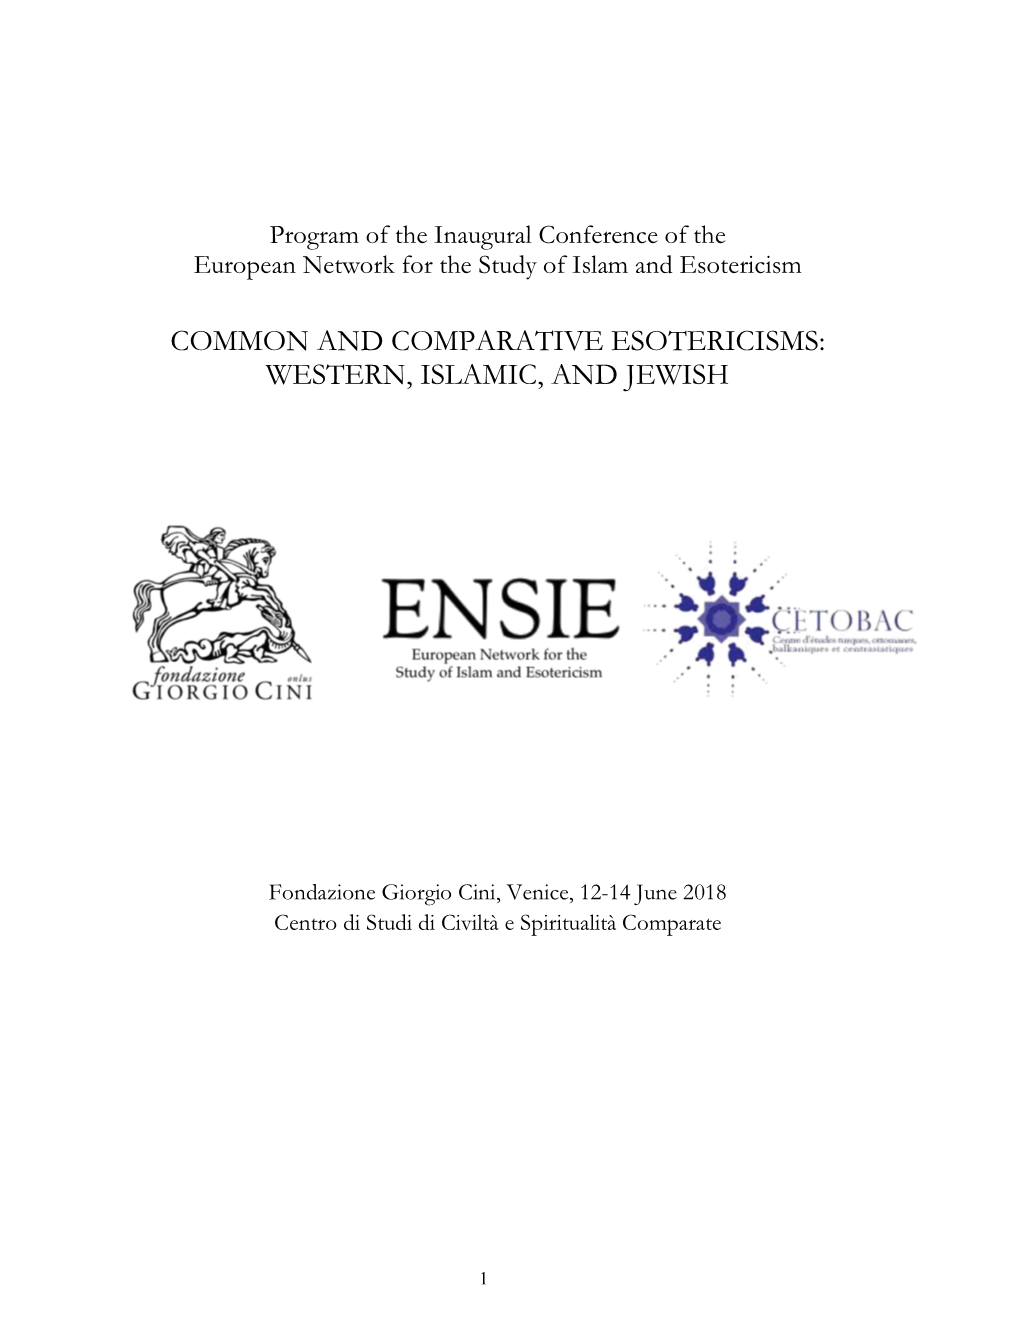 ENSIE Conference Final Program